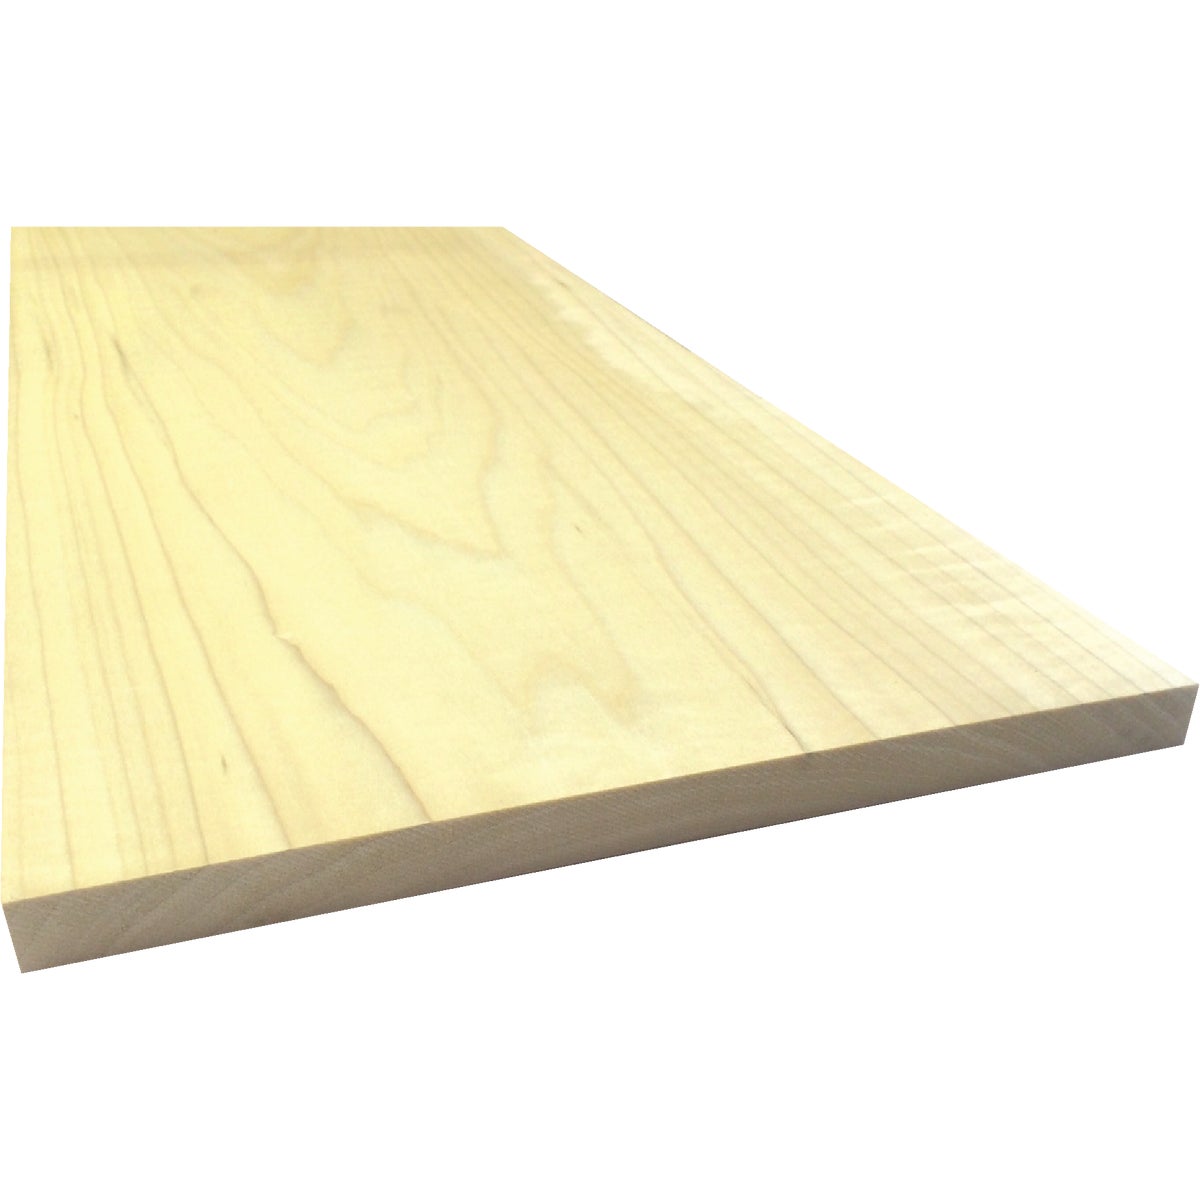 Waddell 1 In. x 12 In. x 8 Ft. Poplar Wood Board